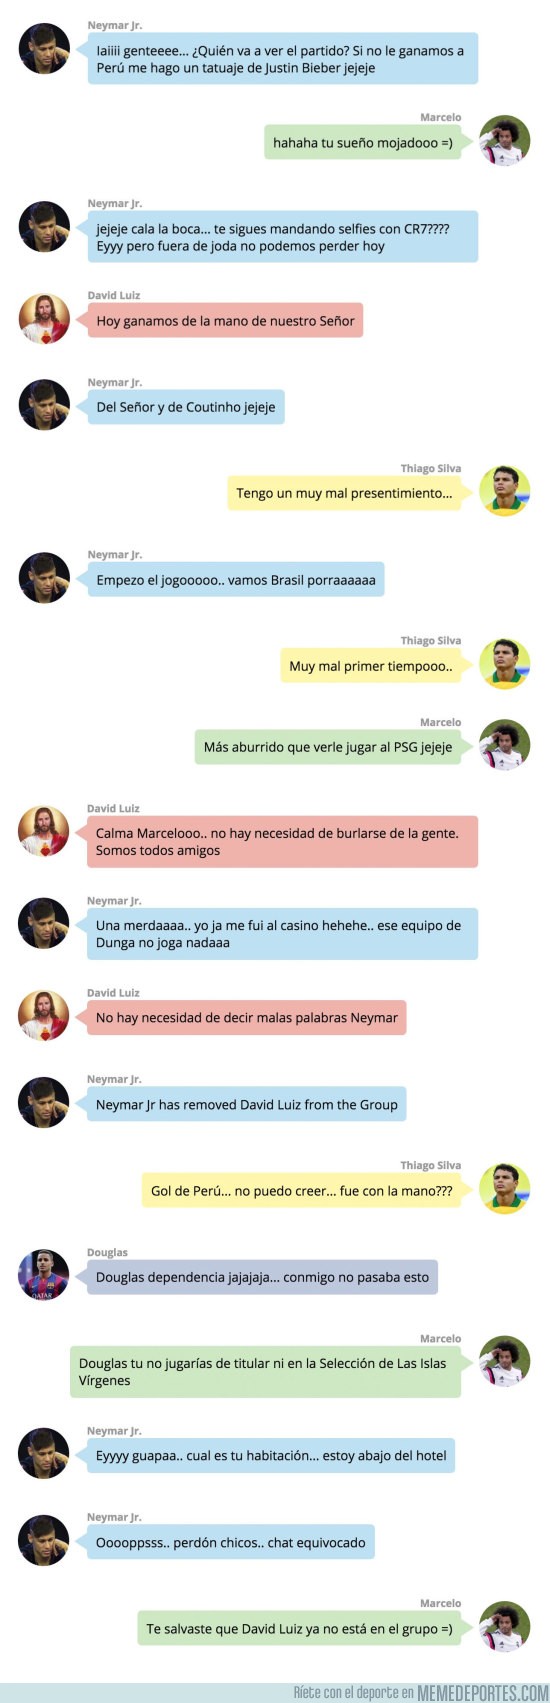 874107 - FILTRADA: La 'conversación' privada de Whatsapp de los jugadores NO CONVOCADOS de Brasil